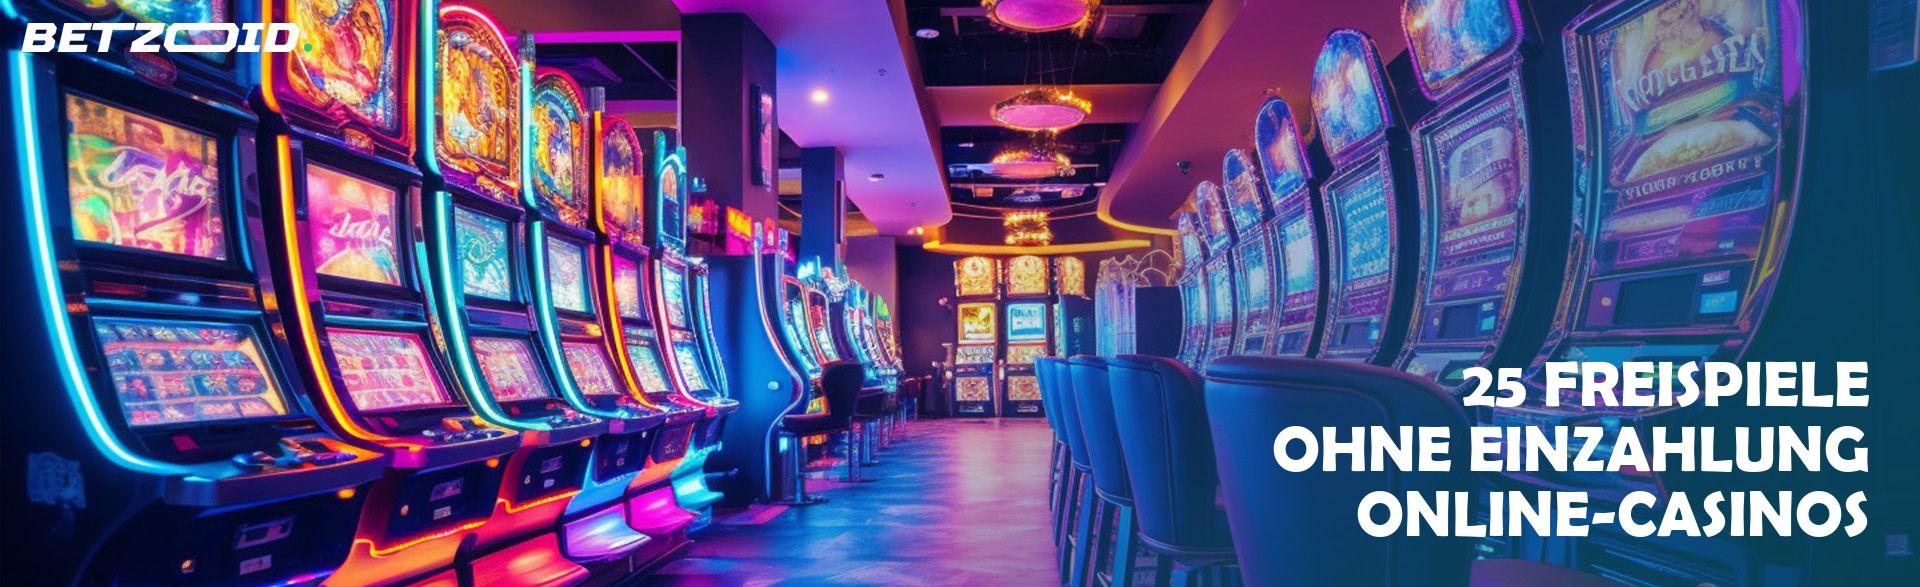 25 Freispiele ohne Einzahlung Online-Casinos.